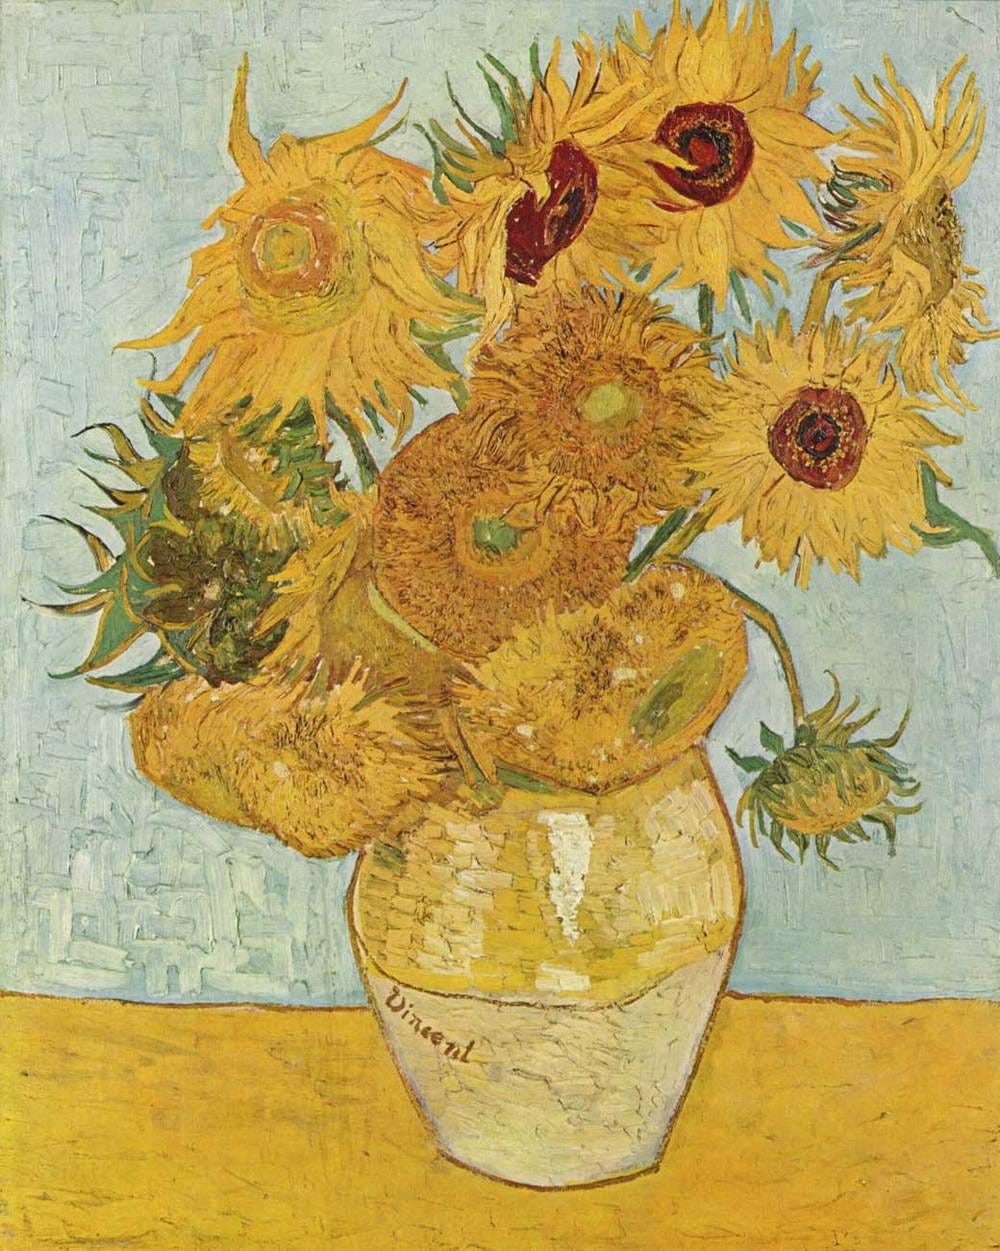 Van Gogh 梵高 願向日葵有一天能觸摸得到陽光 梵高的每一張畫都是他的自畫像 在畫他的心 他一部份的自己 By 蘋果啫喱汁